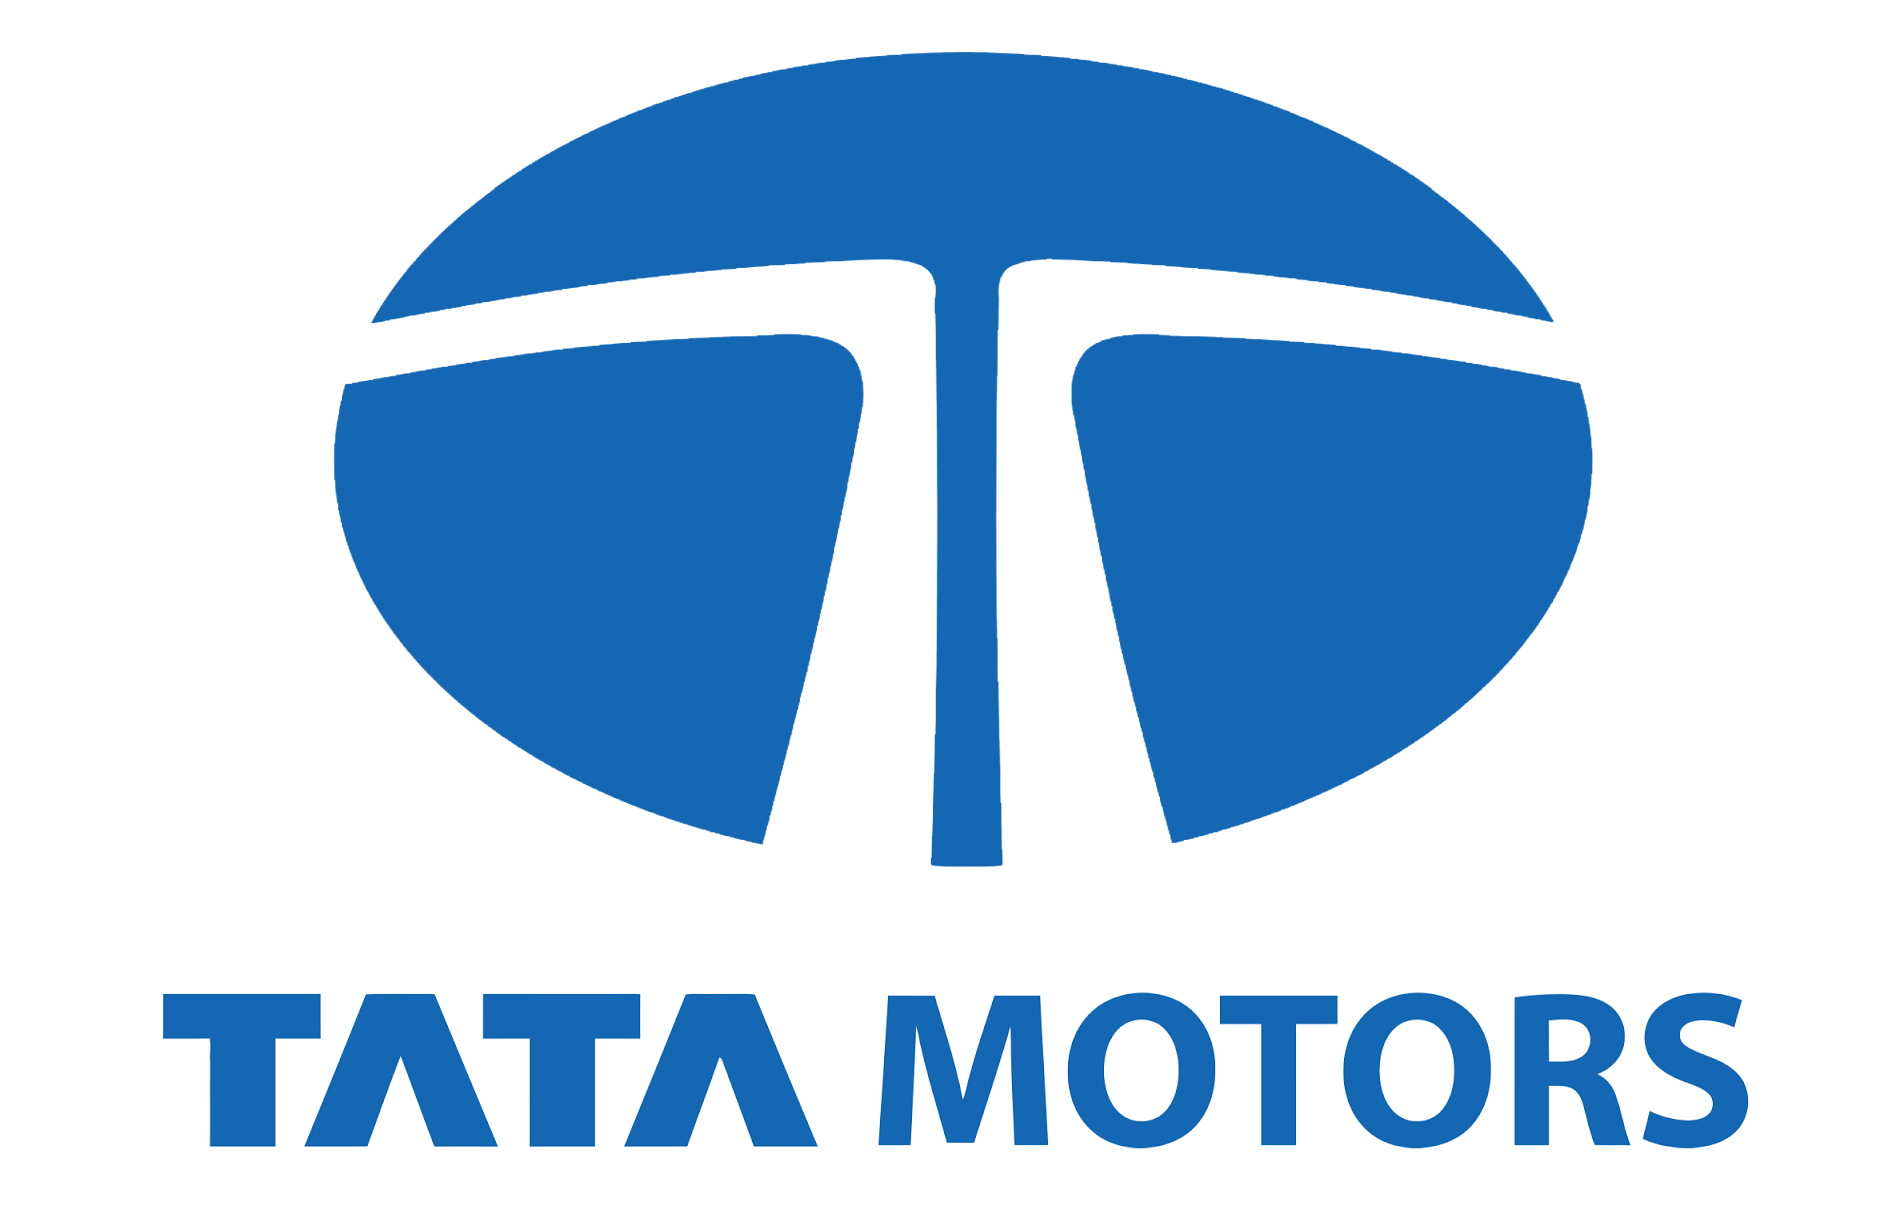 Tata Motors Cars Showroom - Auto Matrix|Show Room|Automotive